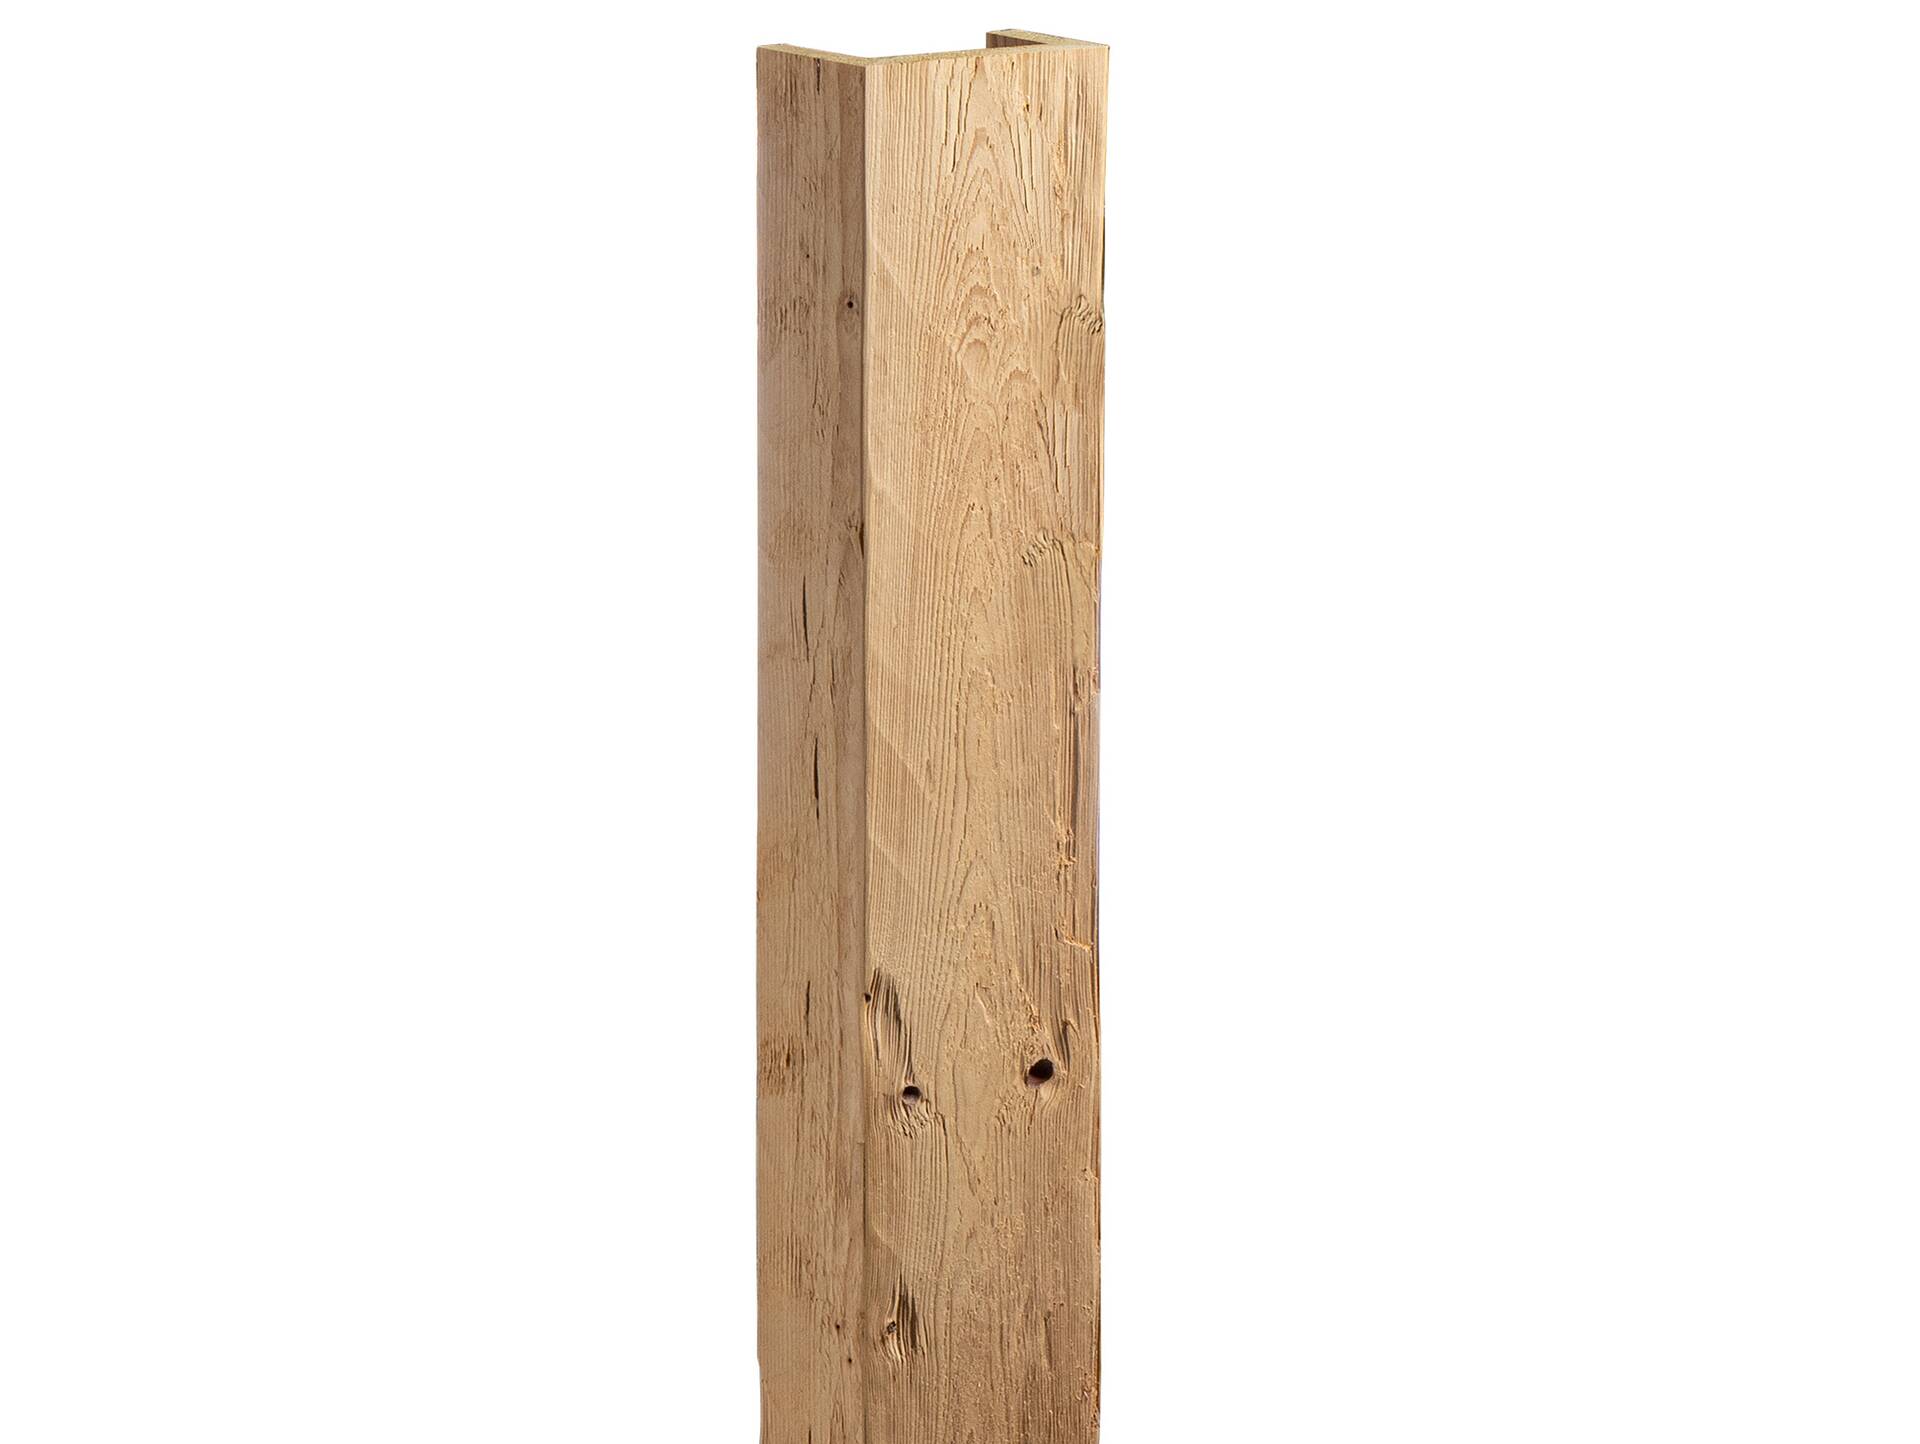 THERMO-U-Balken / Zierbalken gehackt aus THERMO-Fichte, Material Massivholz 120 x 80 mm | 1 Meter